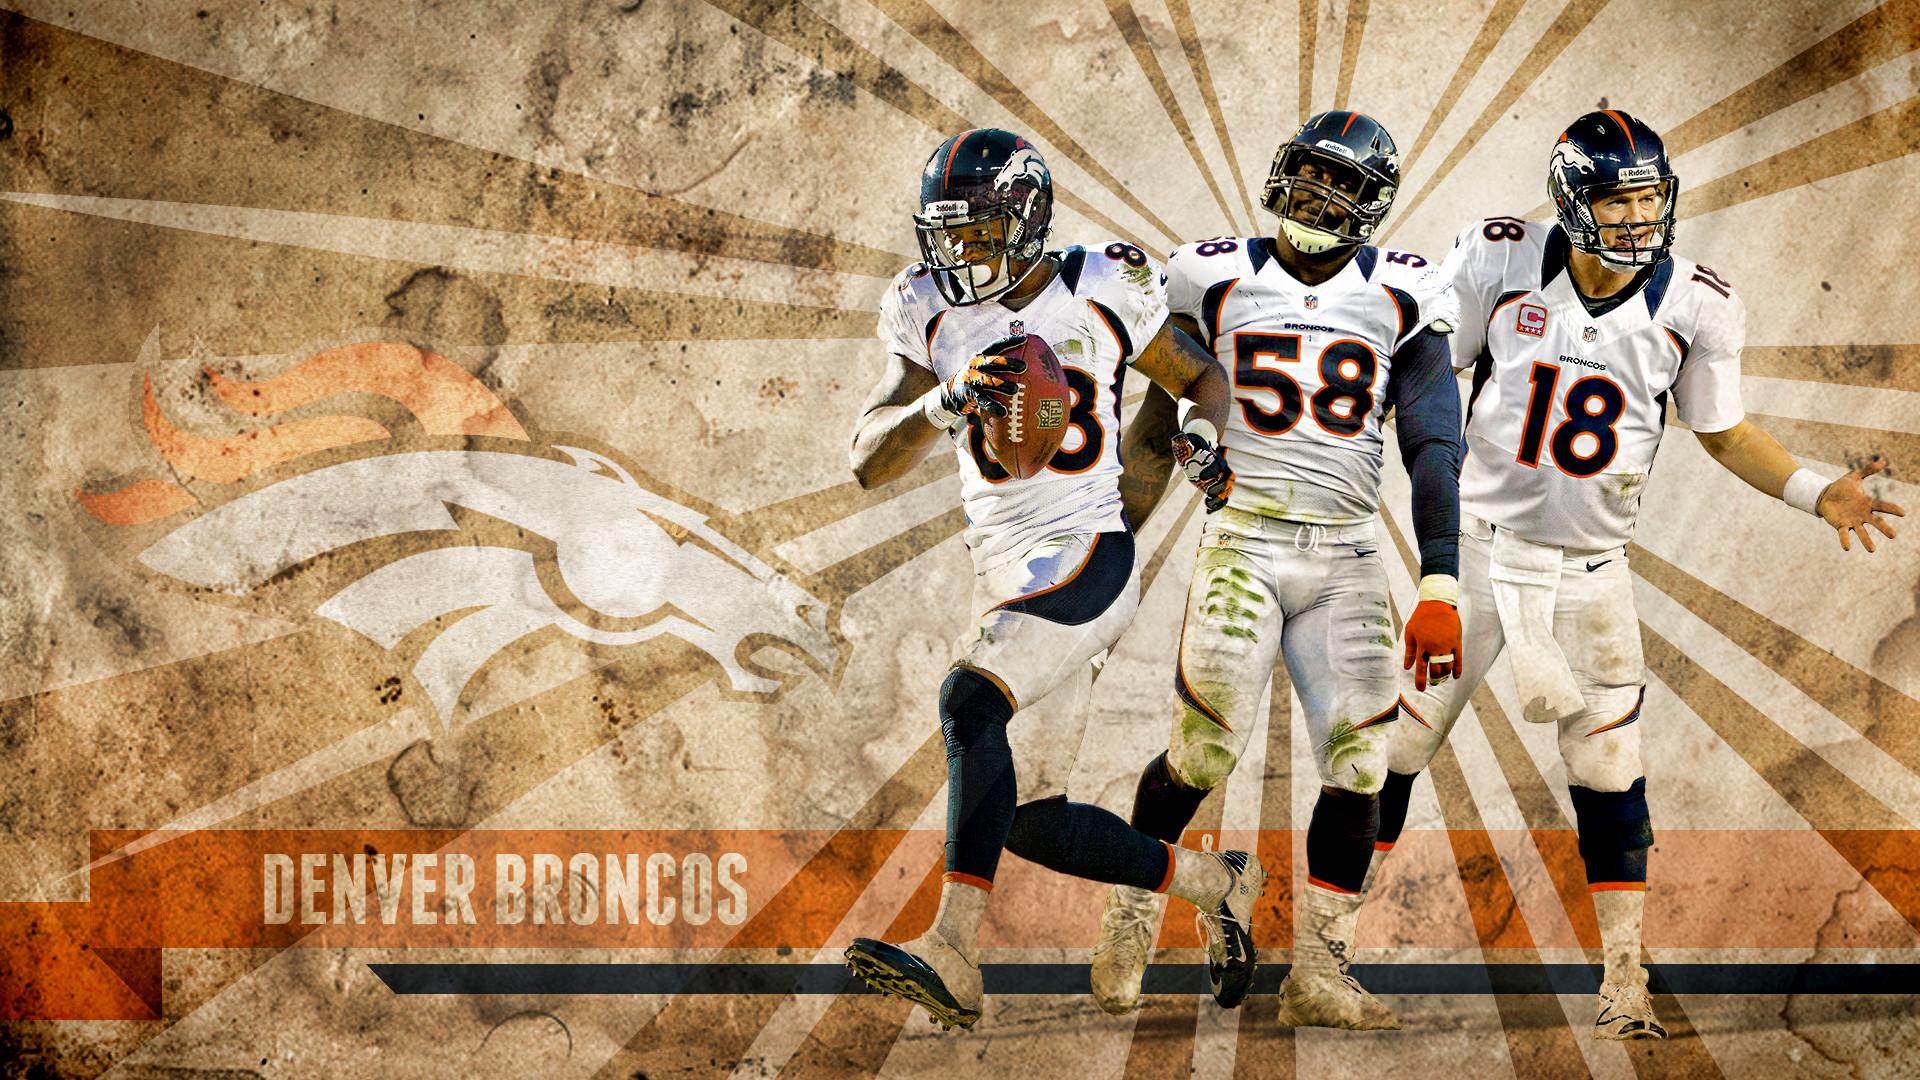 1920x1080 Peyton Manning Broncos Wallpaper. Peyton Manning Broncos Wallpaper Y